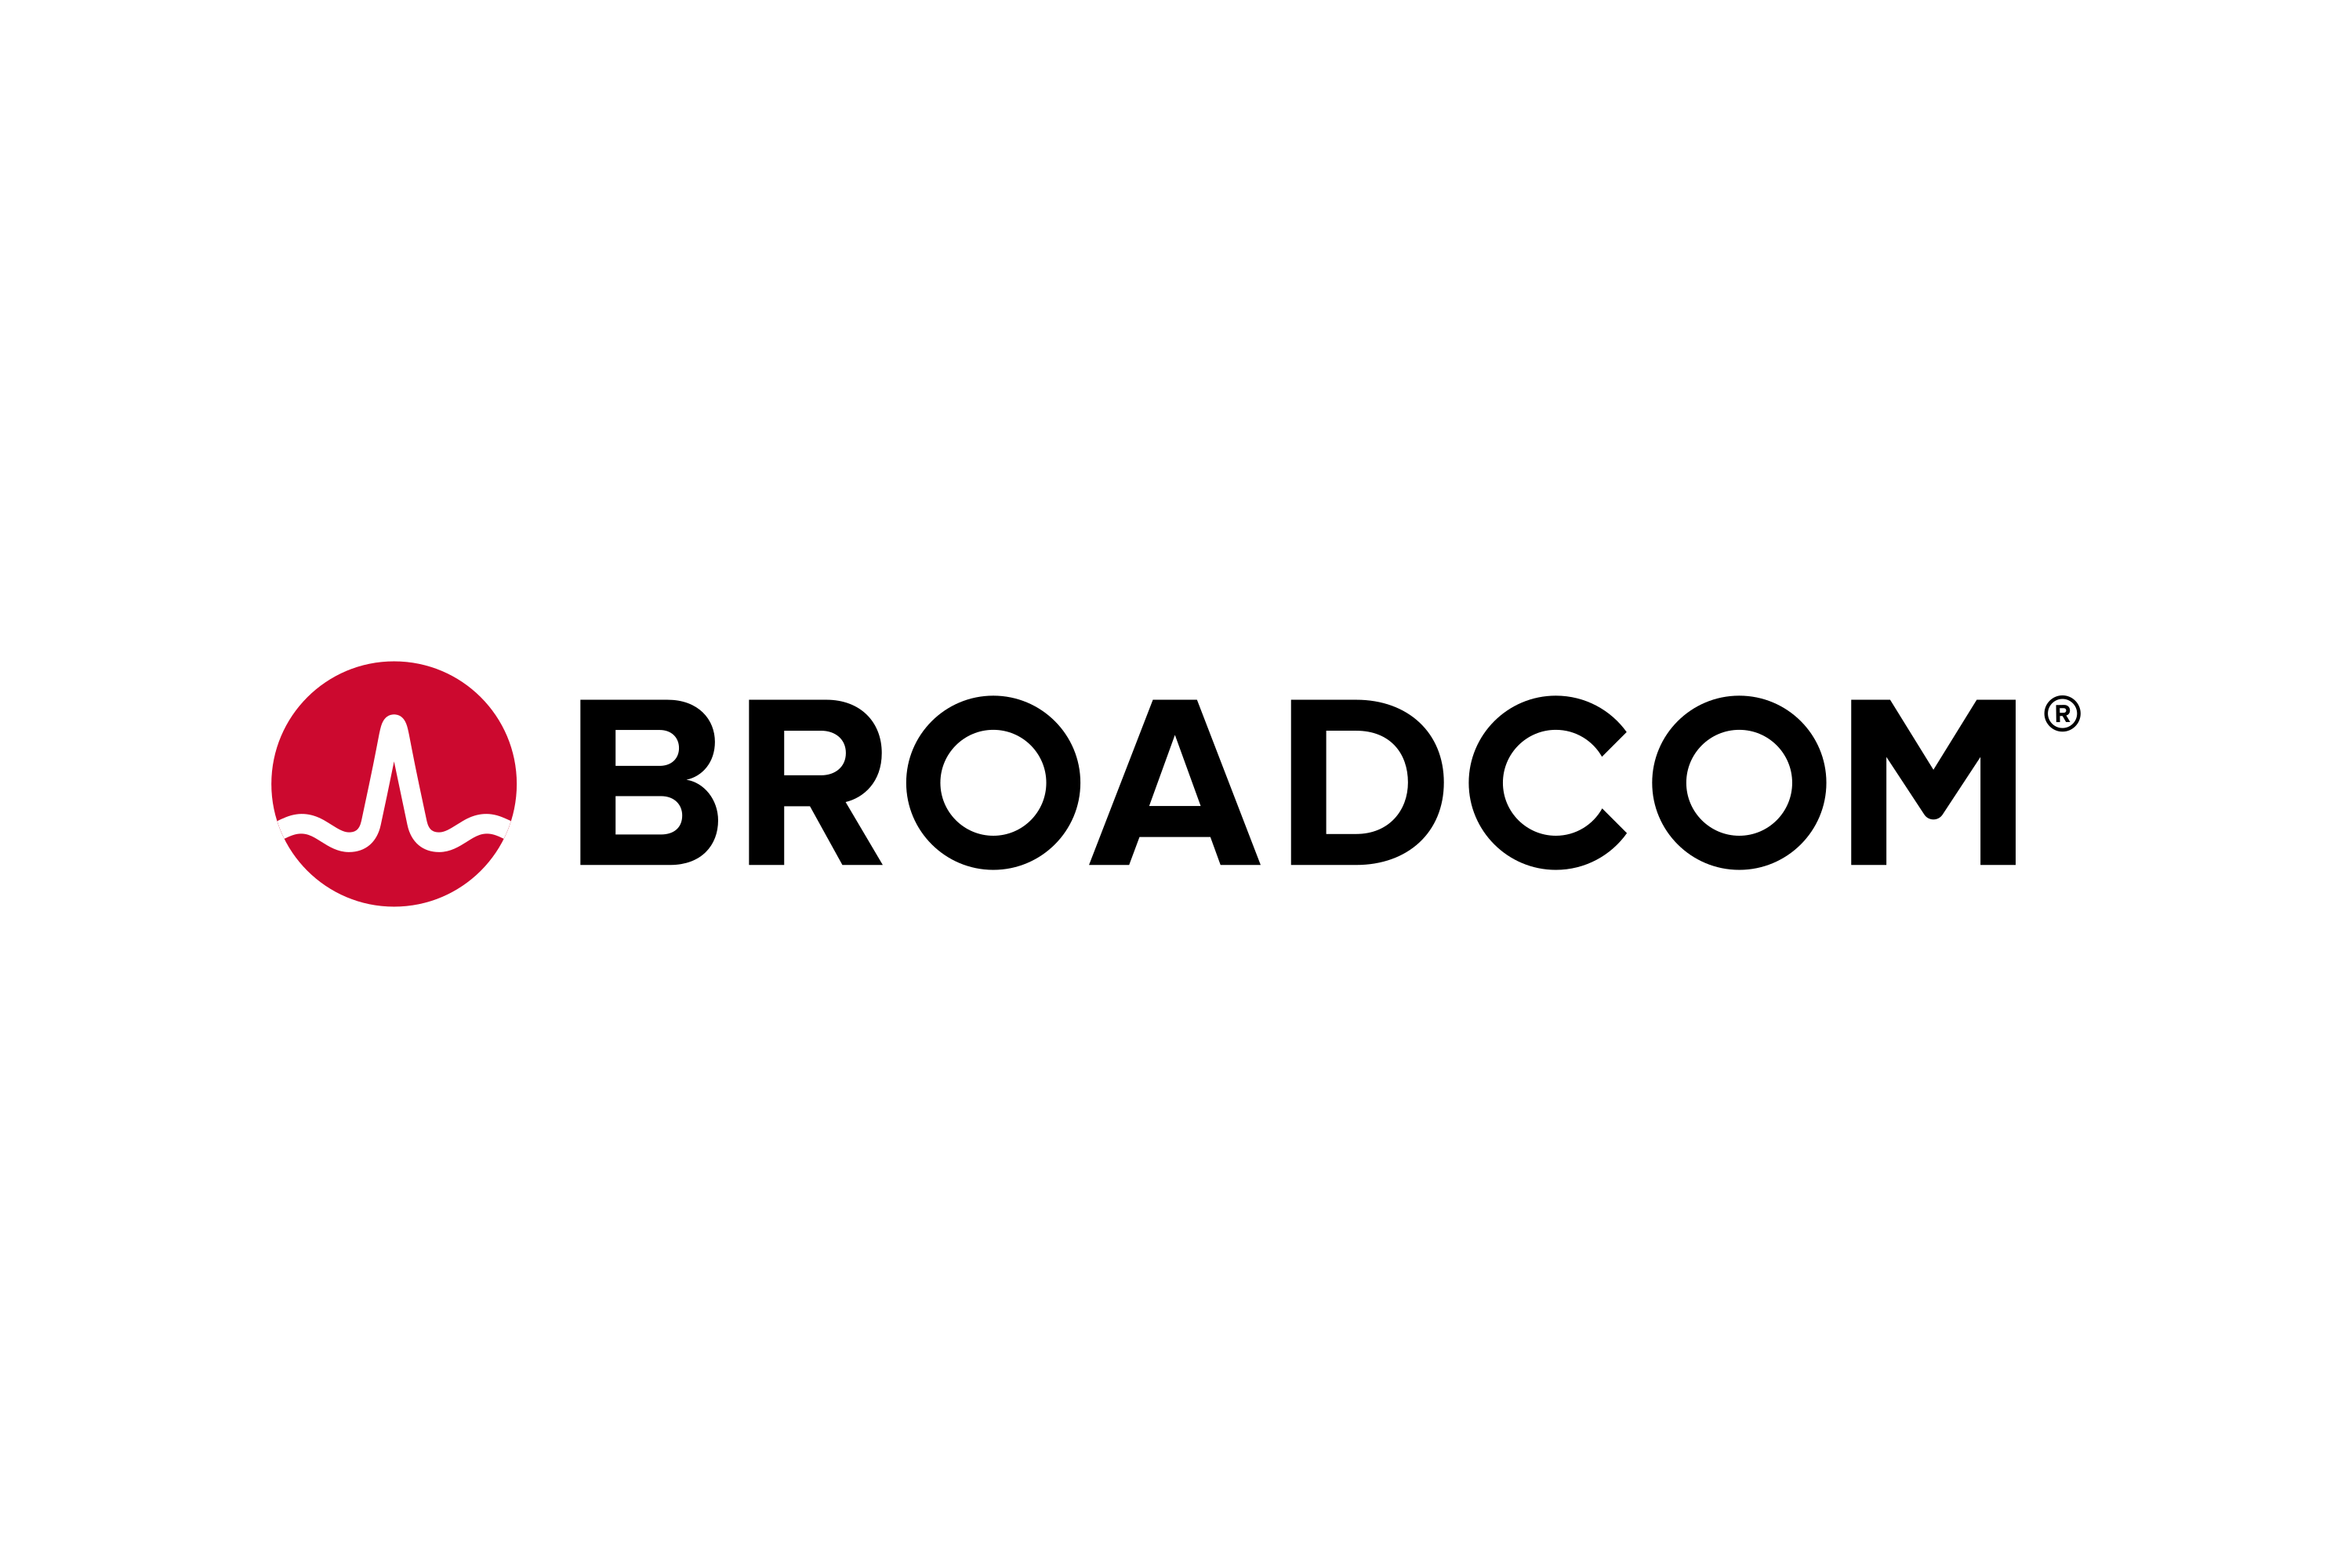 Download Broadcom Logo in SVG Vector or PNG File Format - Logo.wine